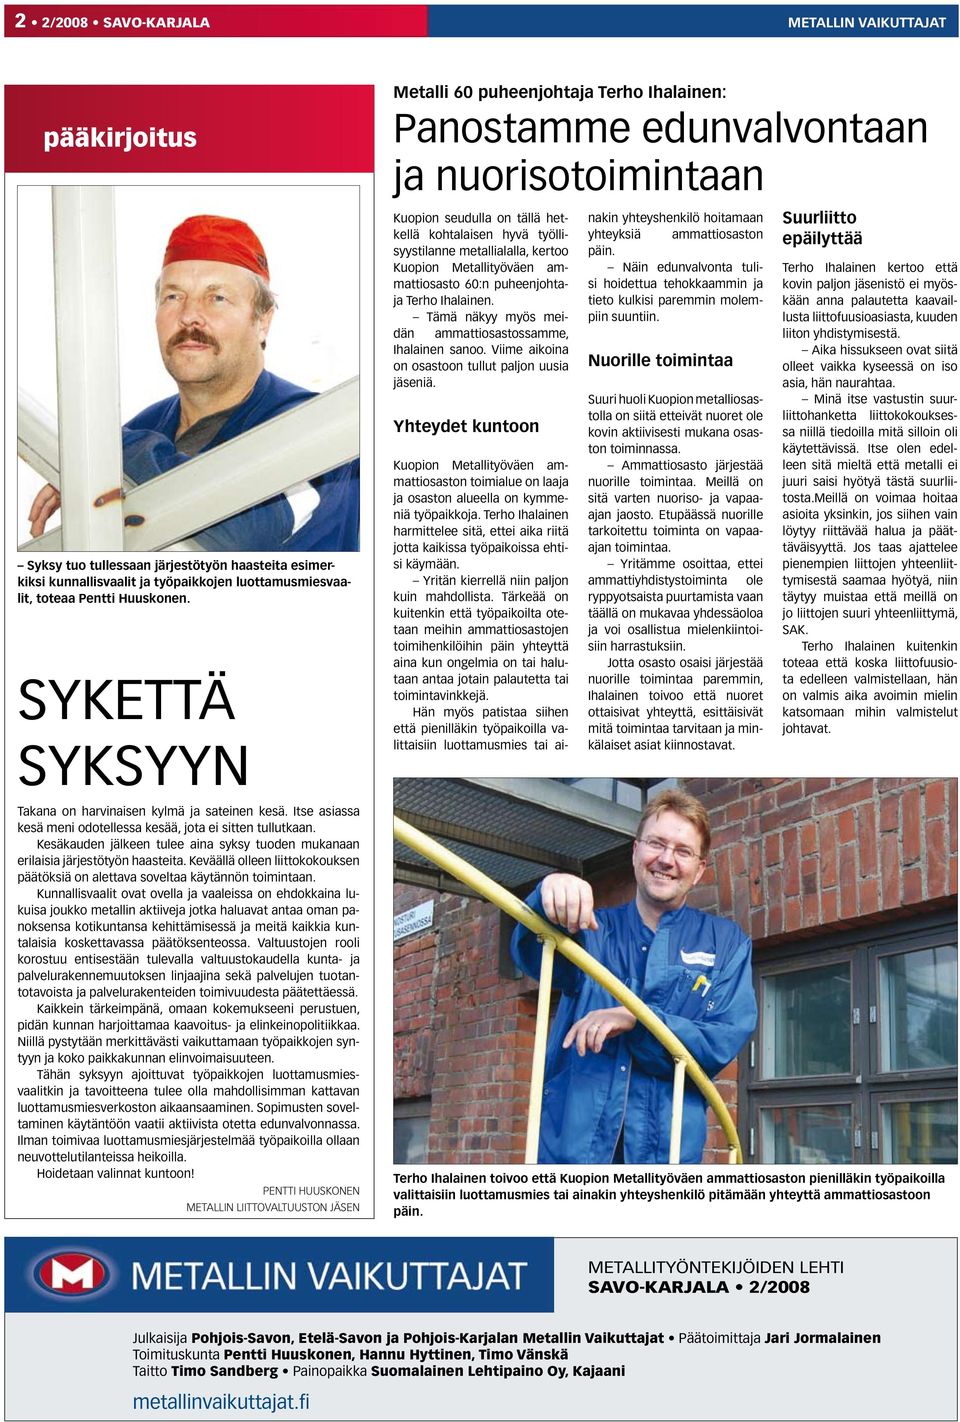 Kuopion Metallityöväen ammattiosasto 60:n puheenjohtaja Terho Ihalainen. Tämä näkyy myös meidän ammattiosastossamme, Ihalainen sanoo. Viime aikoina on osastoon tullut paljon uusia jäseniä.